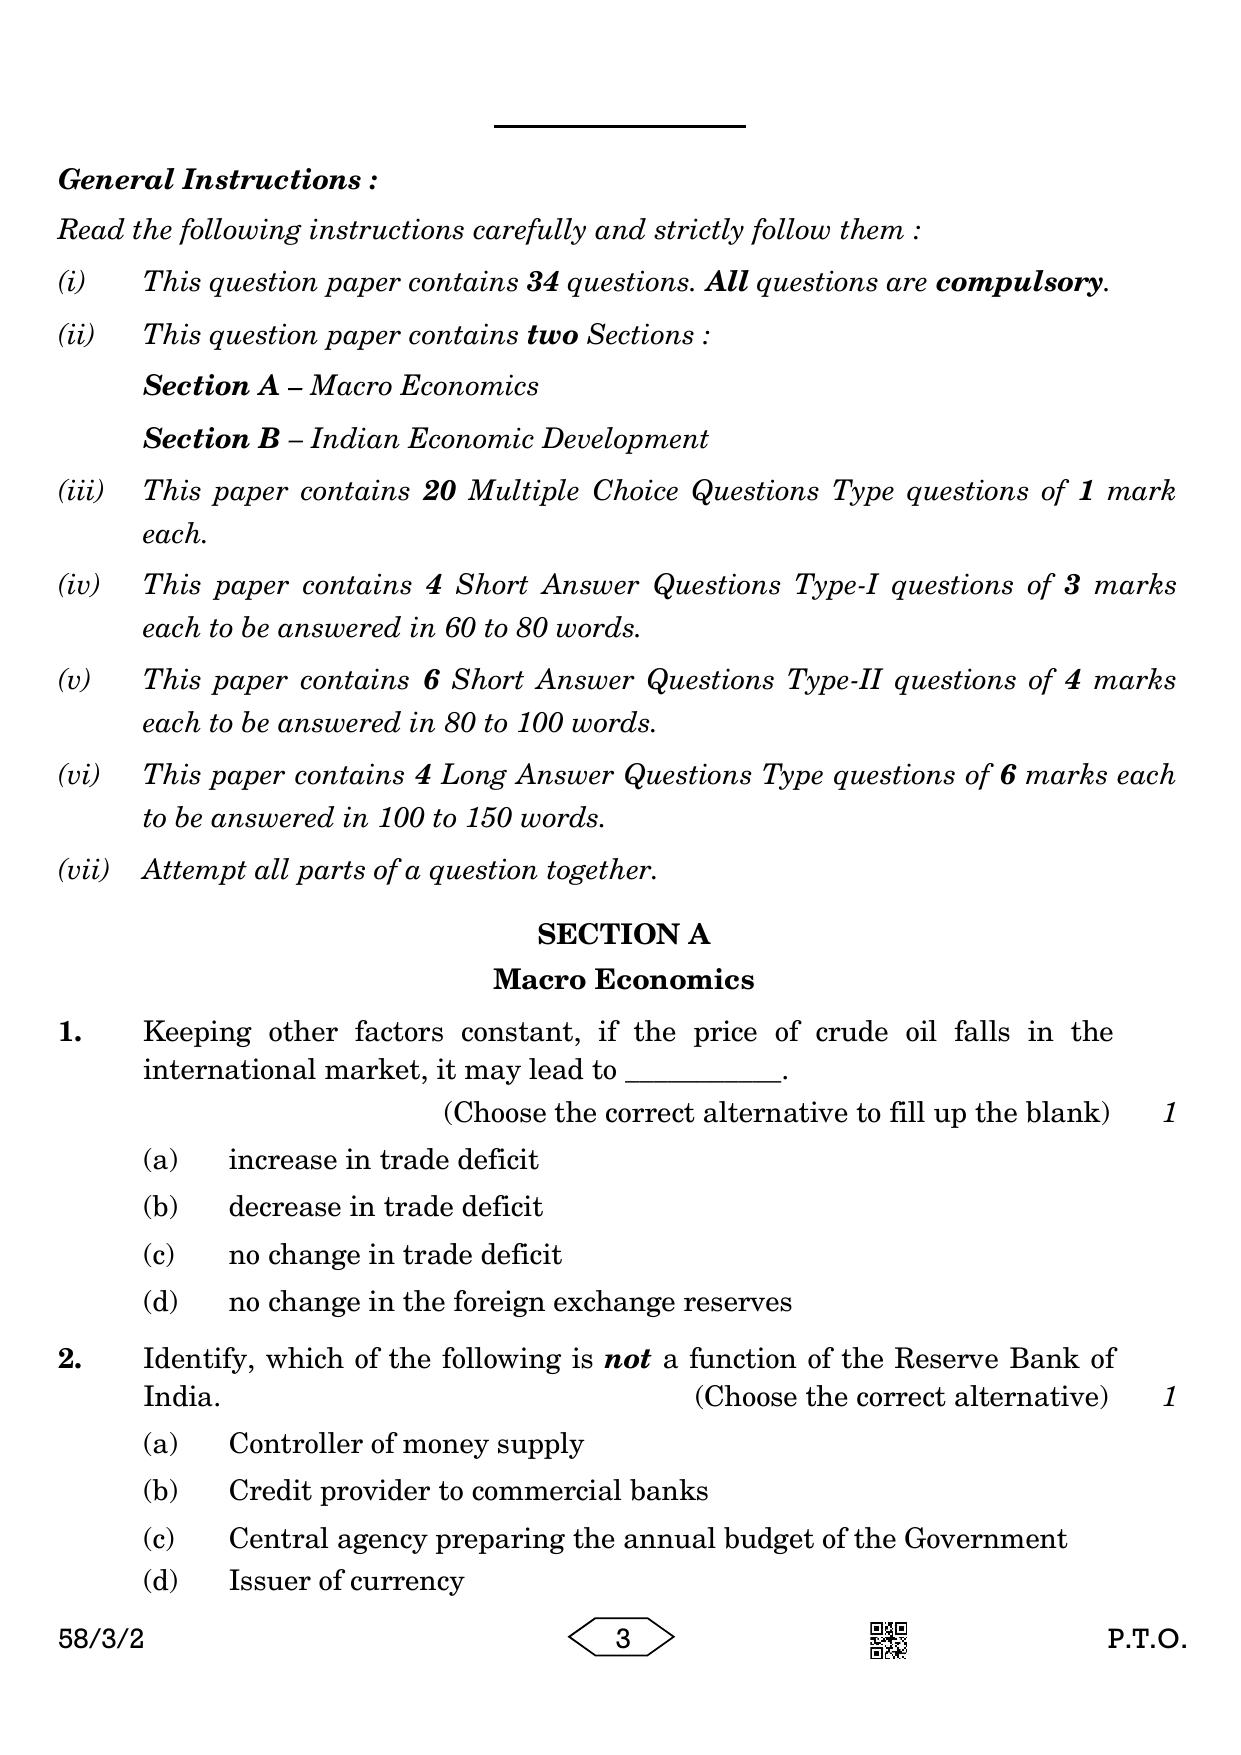 CBSE Class 12 58-3-2 Economics 2023 Question Paper - Page 3